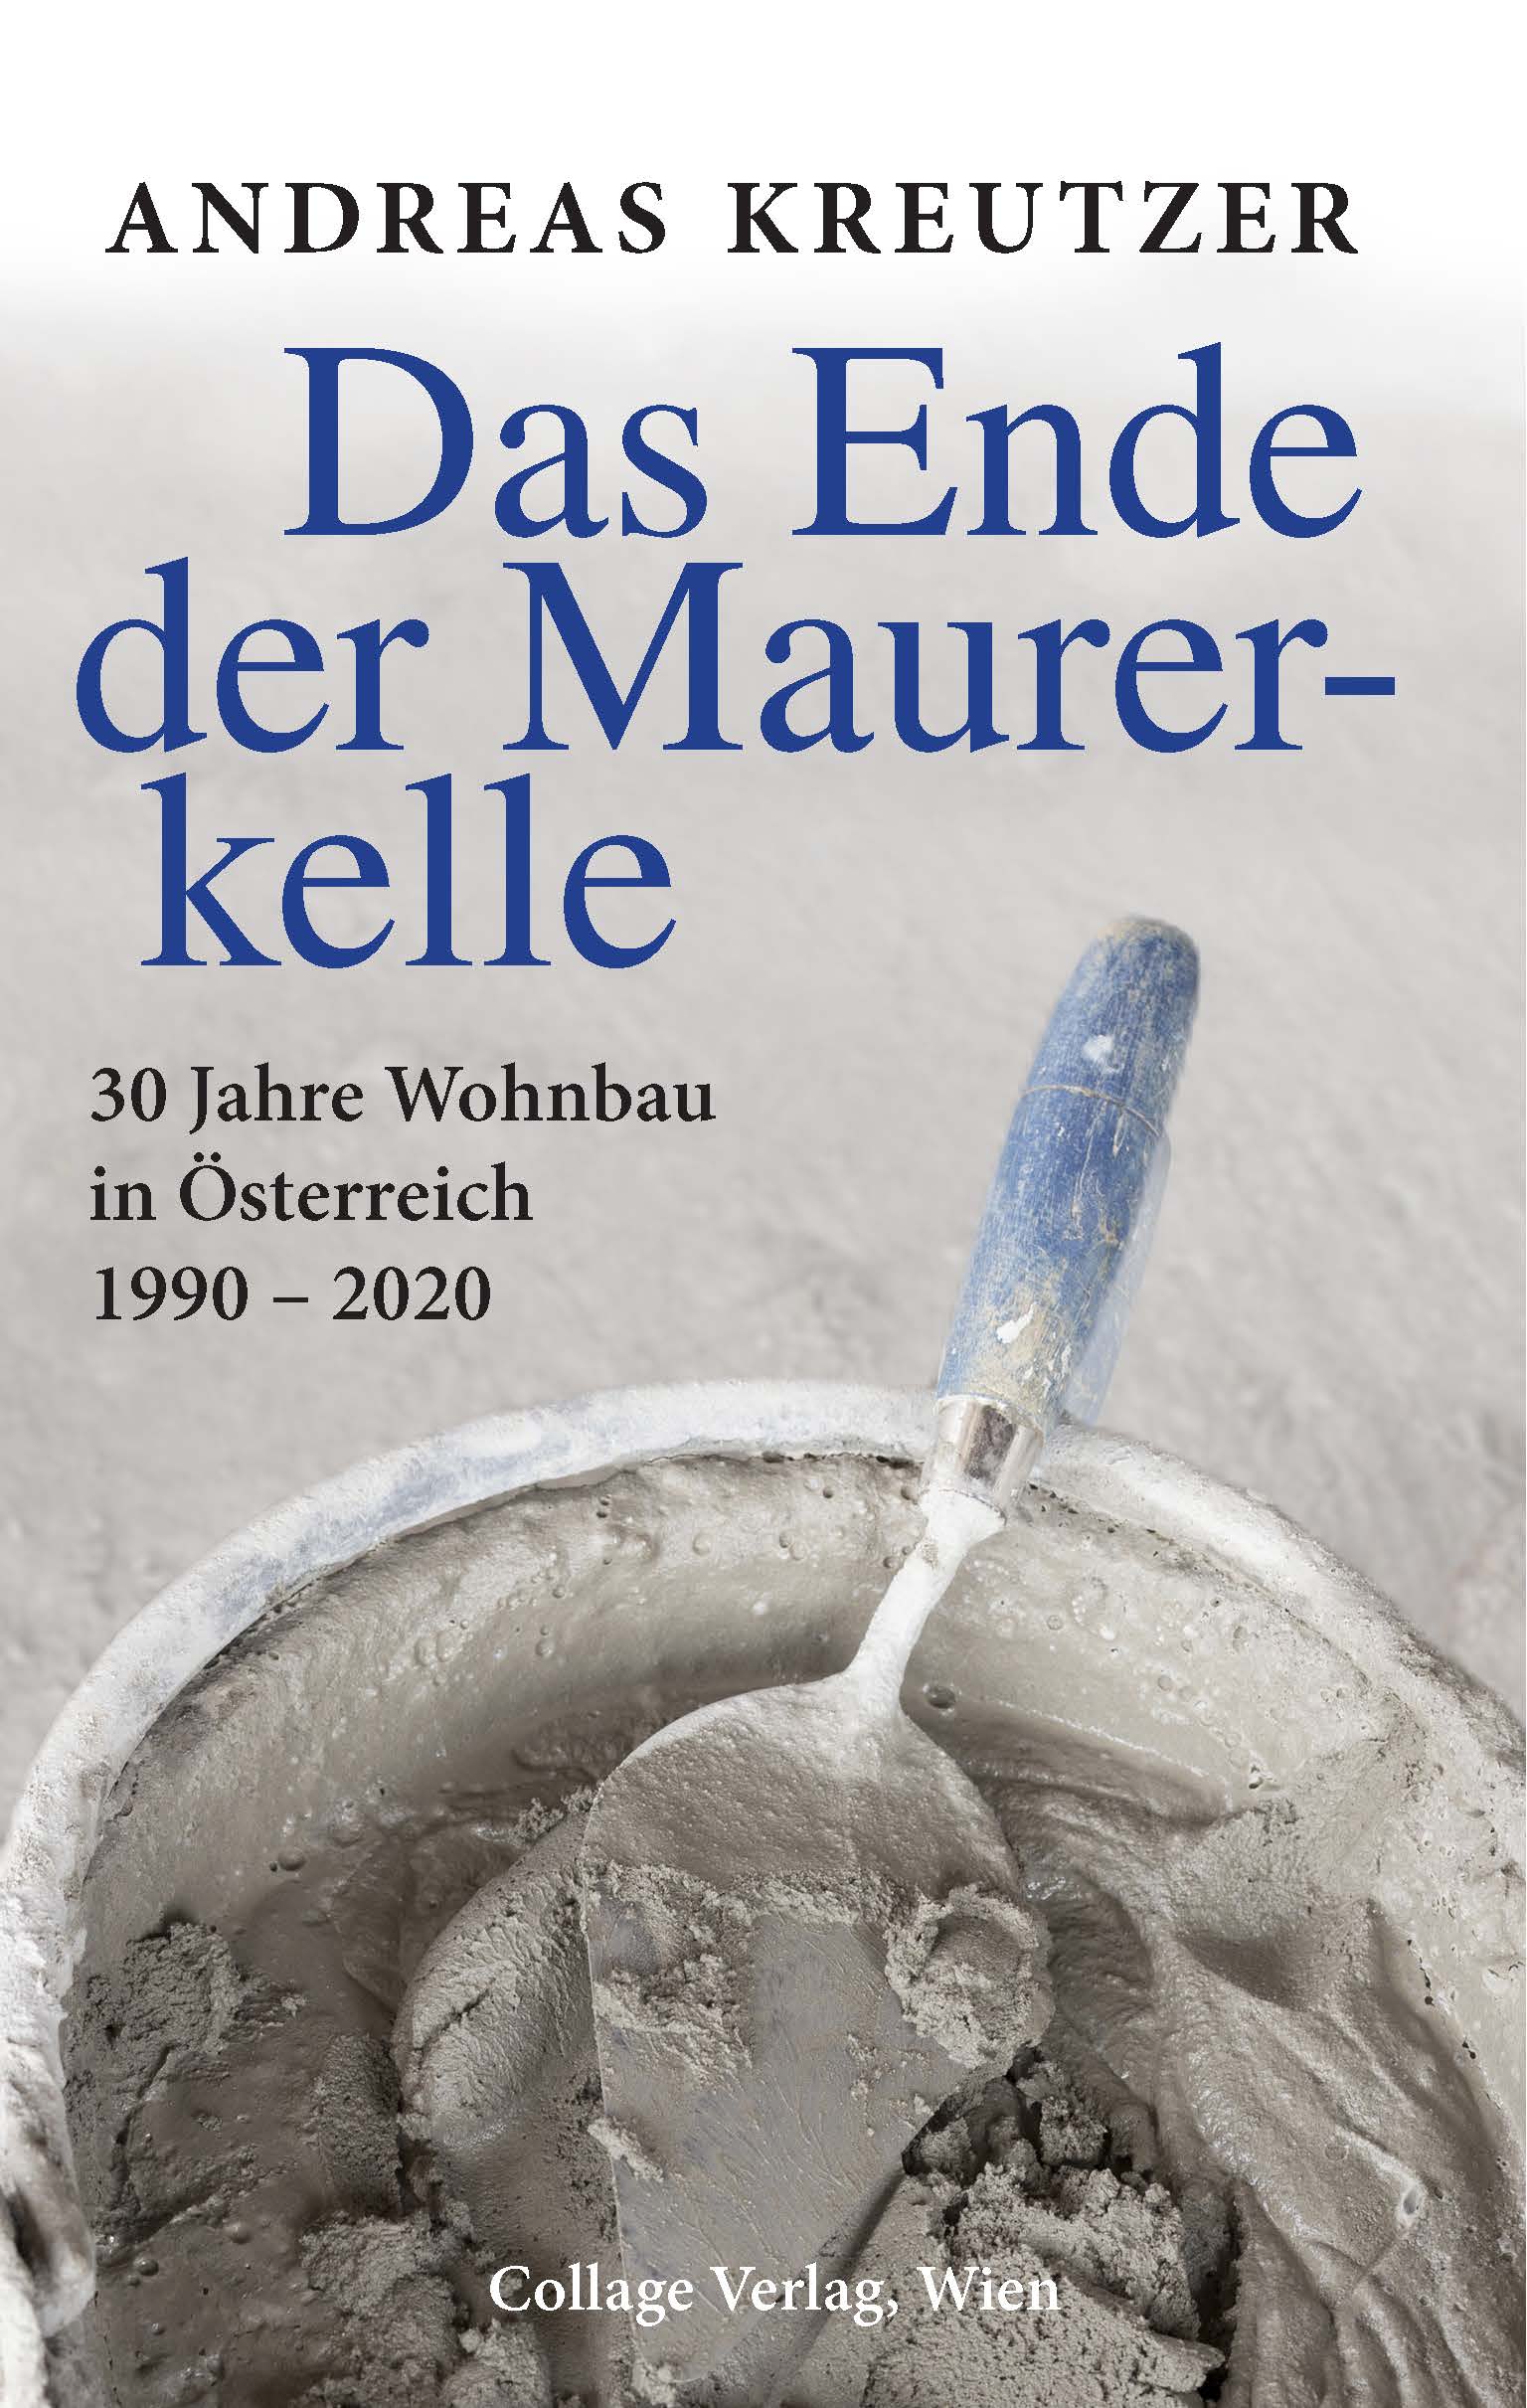 Buchcover: Das Ende der Maurerkelle - 30 Jahre Wohnbau in Österreich 1990 -2020 von Andreas Kreutzer